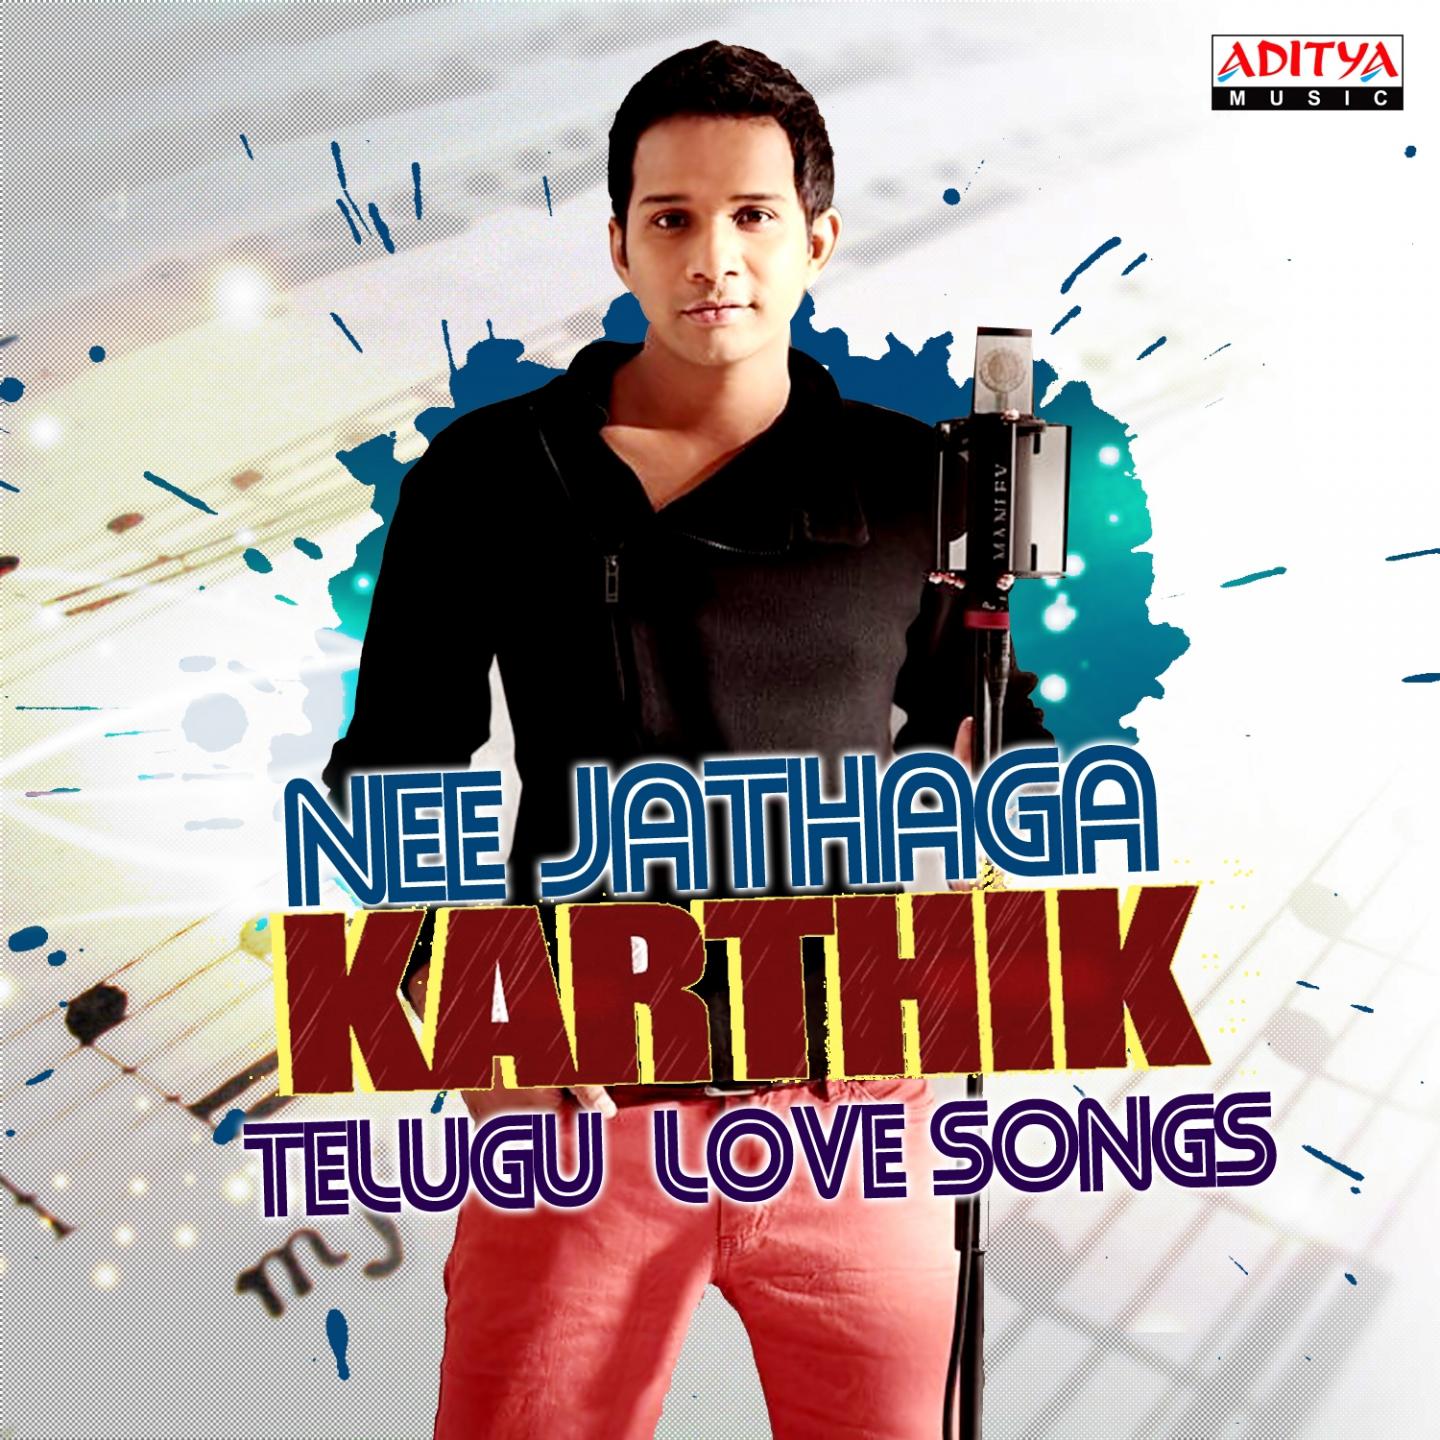 Nee Jathaga Karthik - Telugu Love Songs专辑